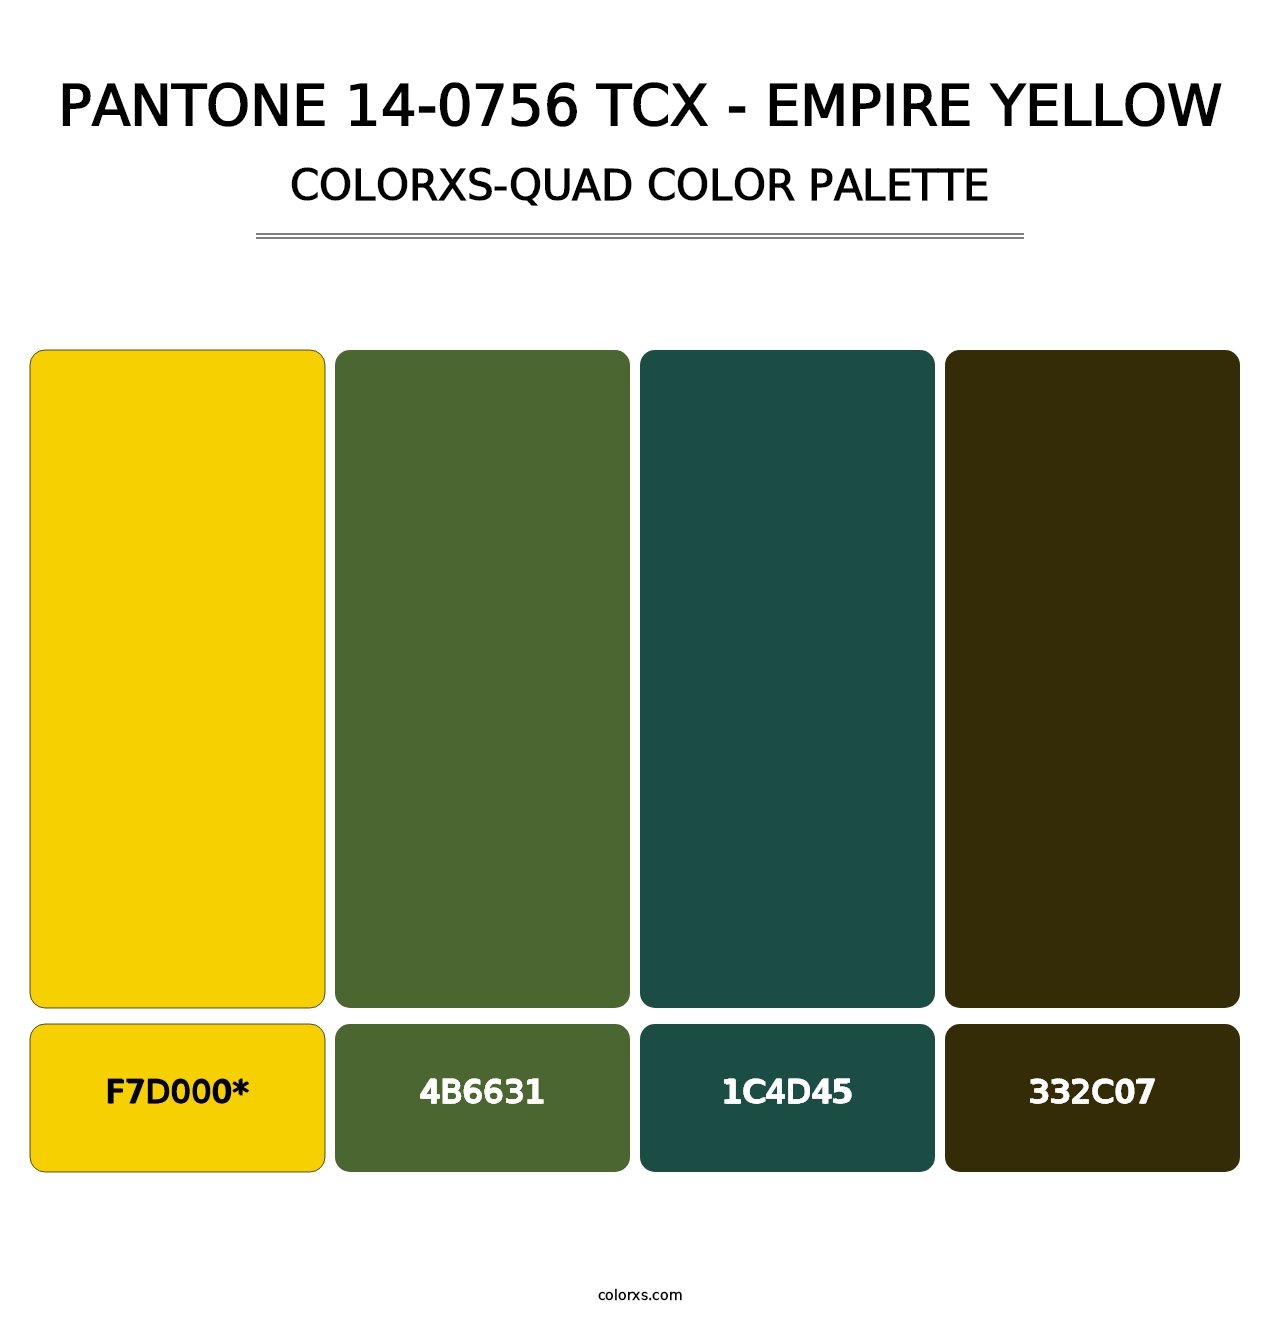 PANTONE 14-0756 TCX - Empire Yellow - Colorxs Quad Palette